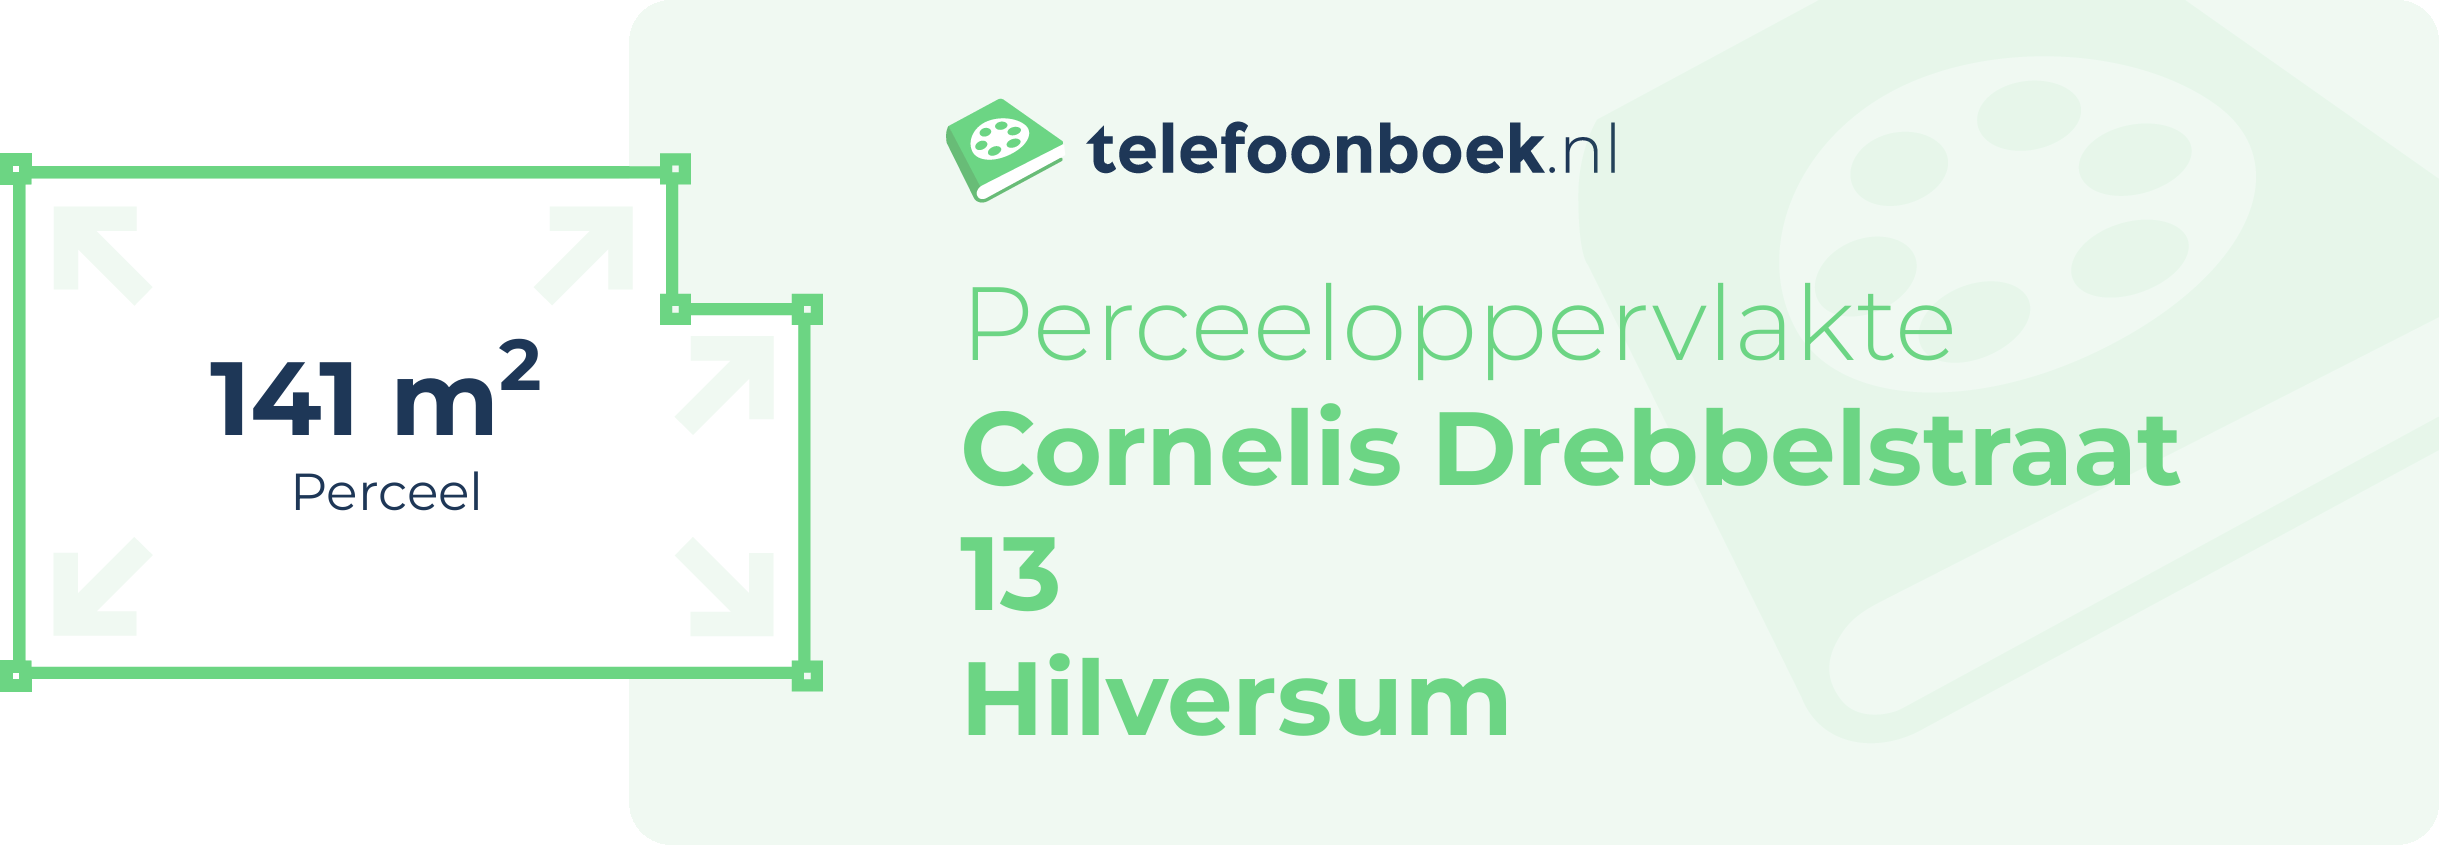 Perceeloppervlakte Cornelis Drebbelstraat 13 Hilversum